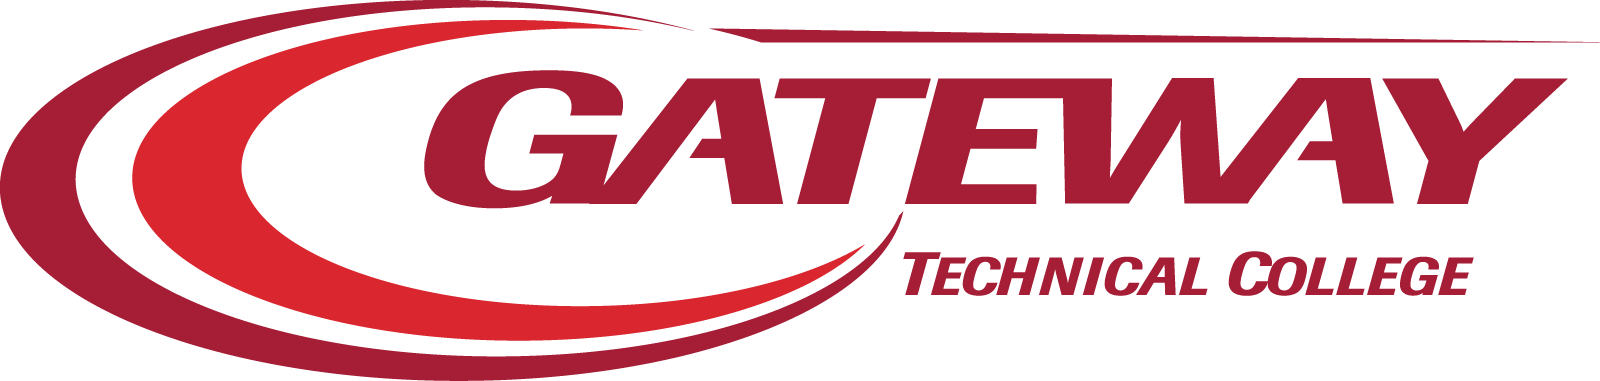 Gateway full color logo